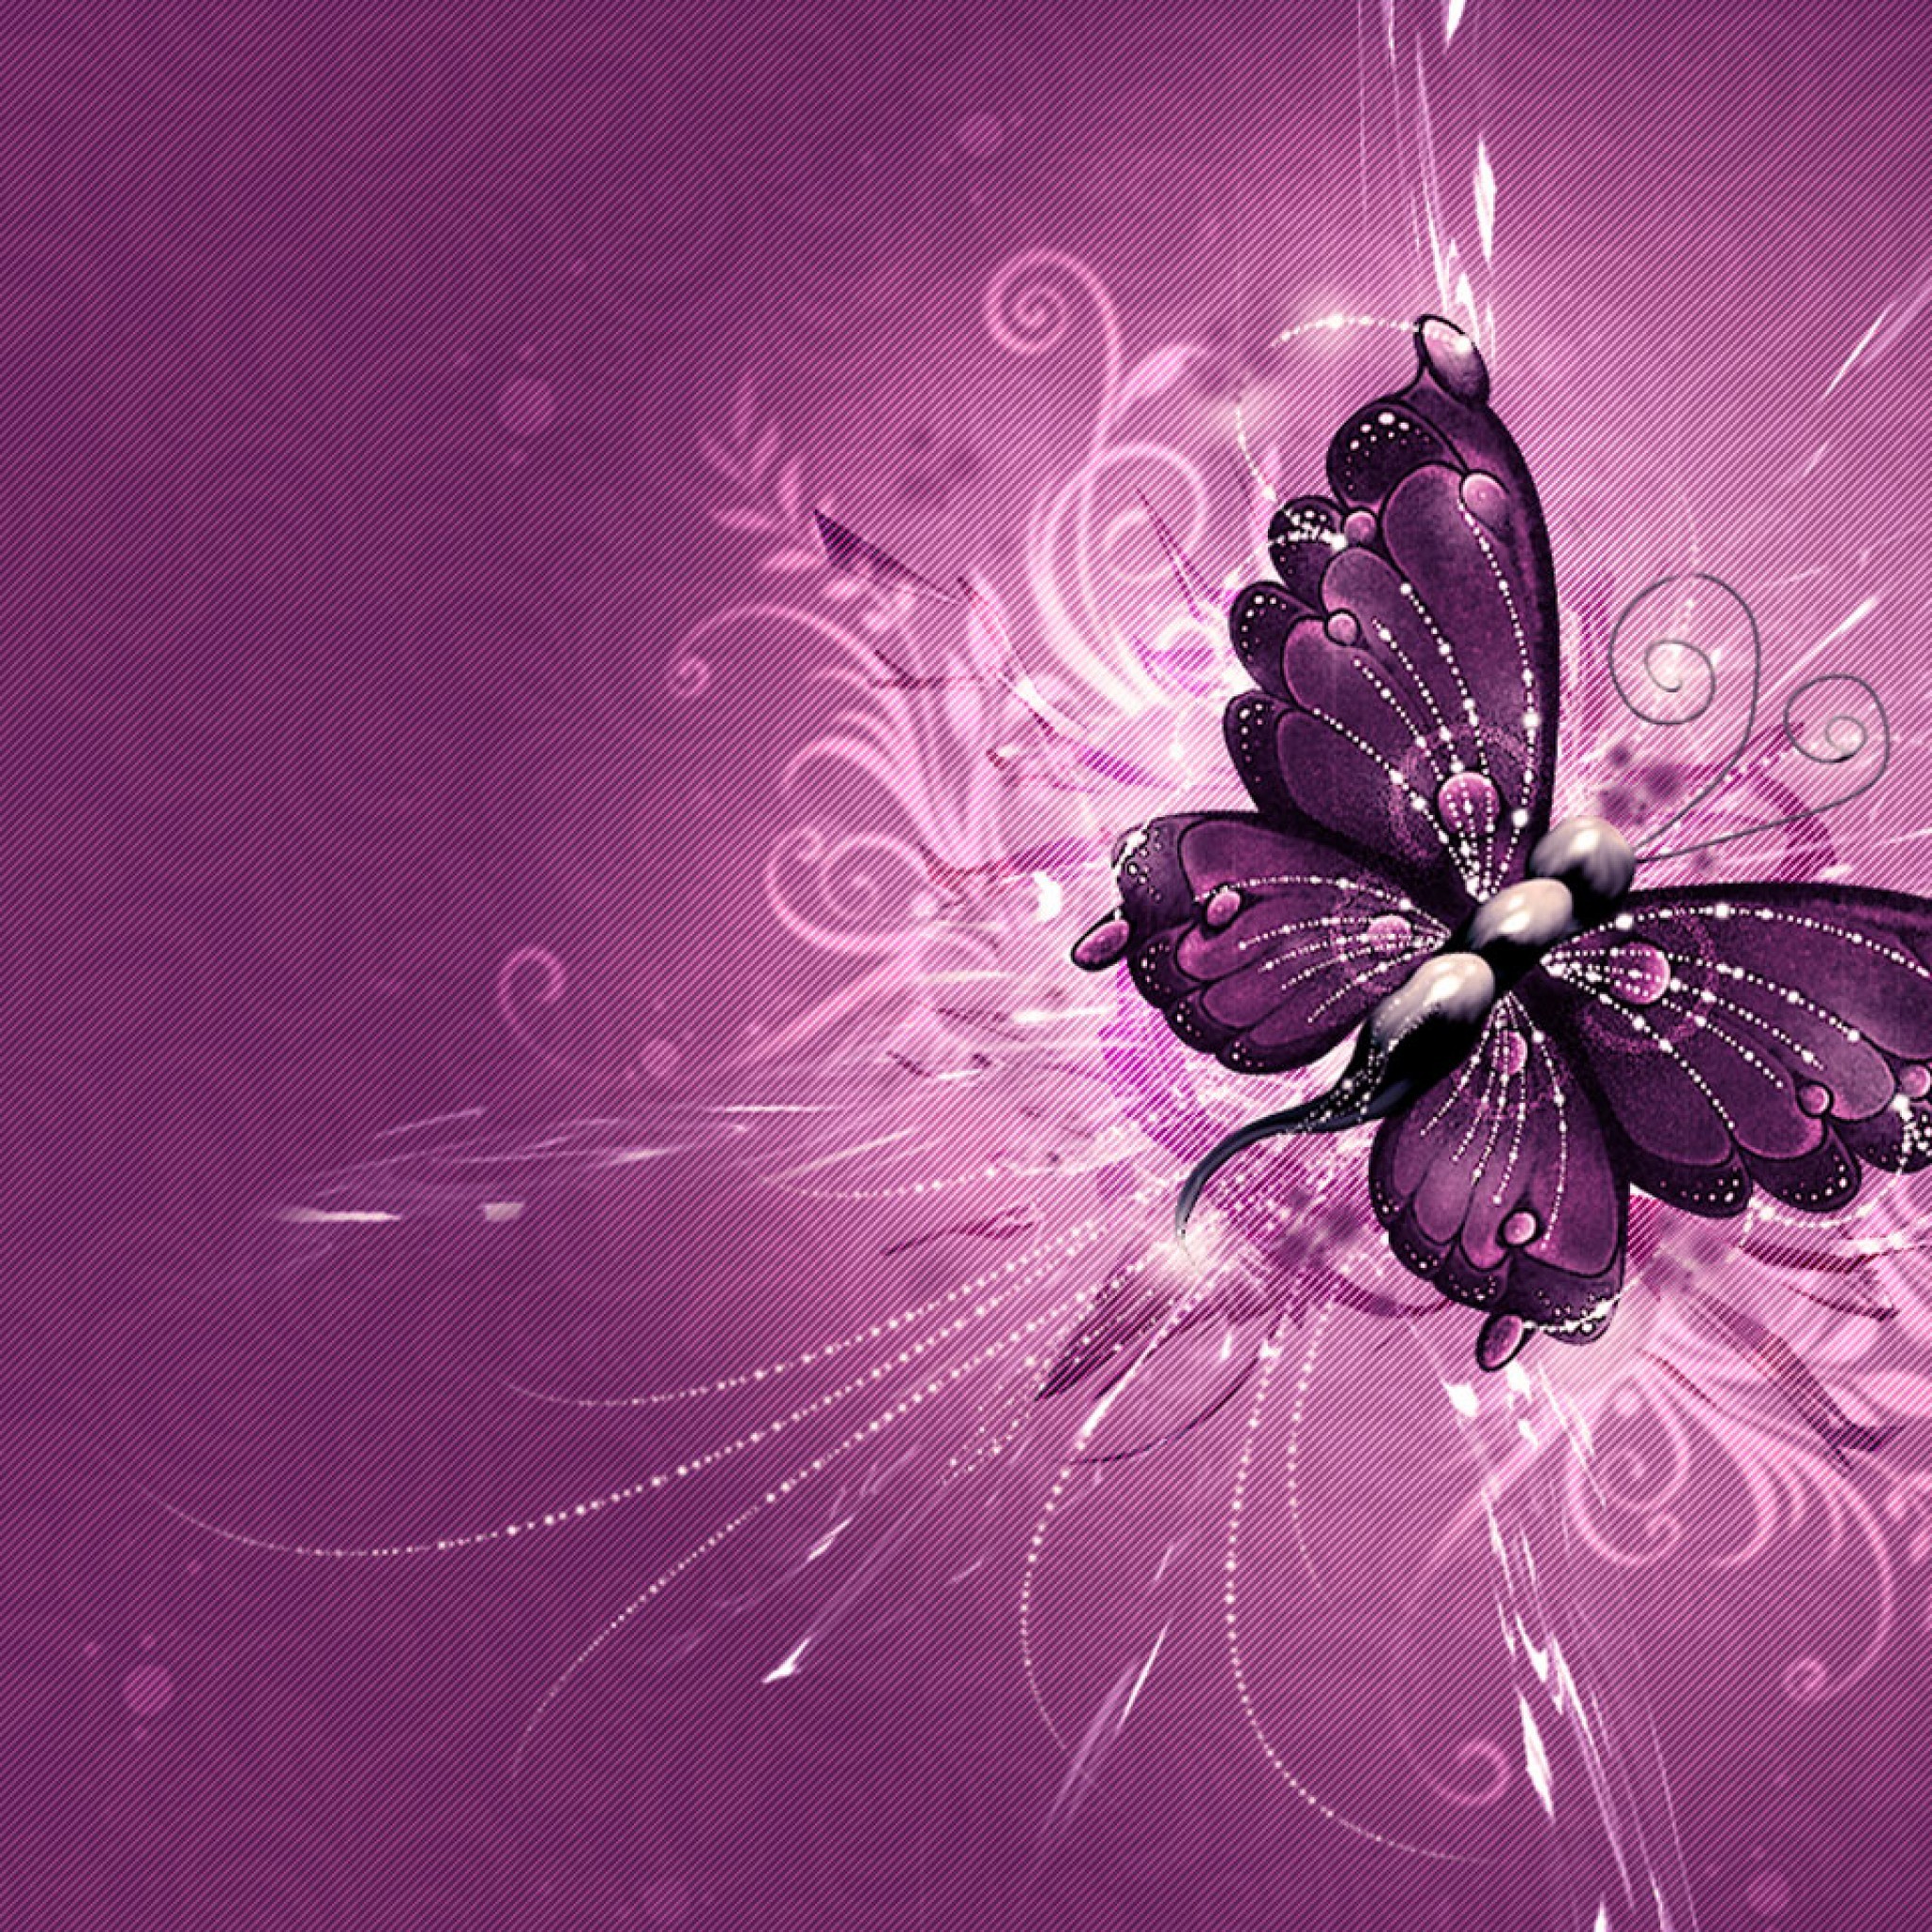 心に強く訴える蝶 壁紙 イラスト 花の画像